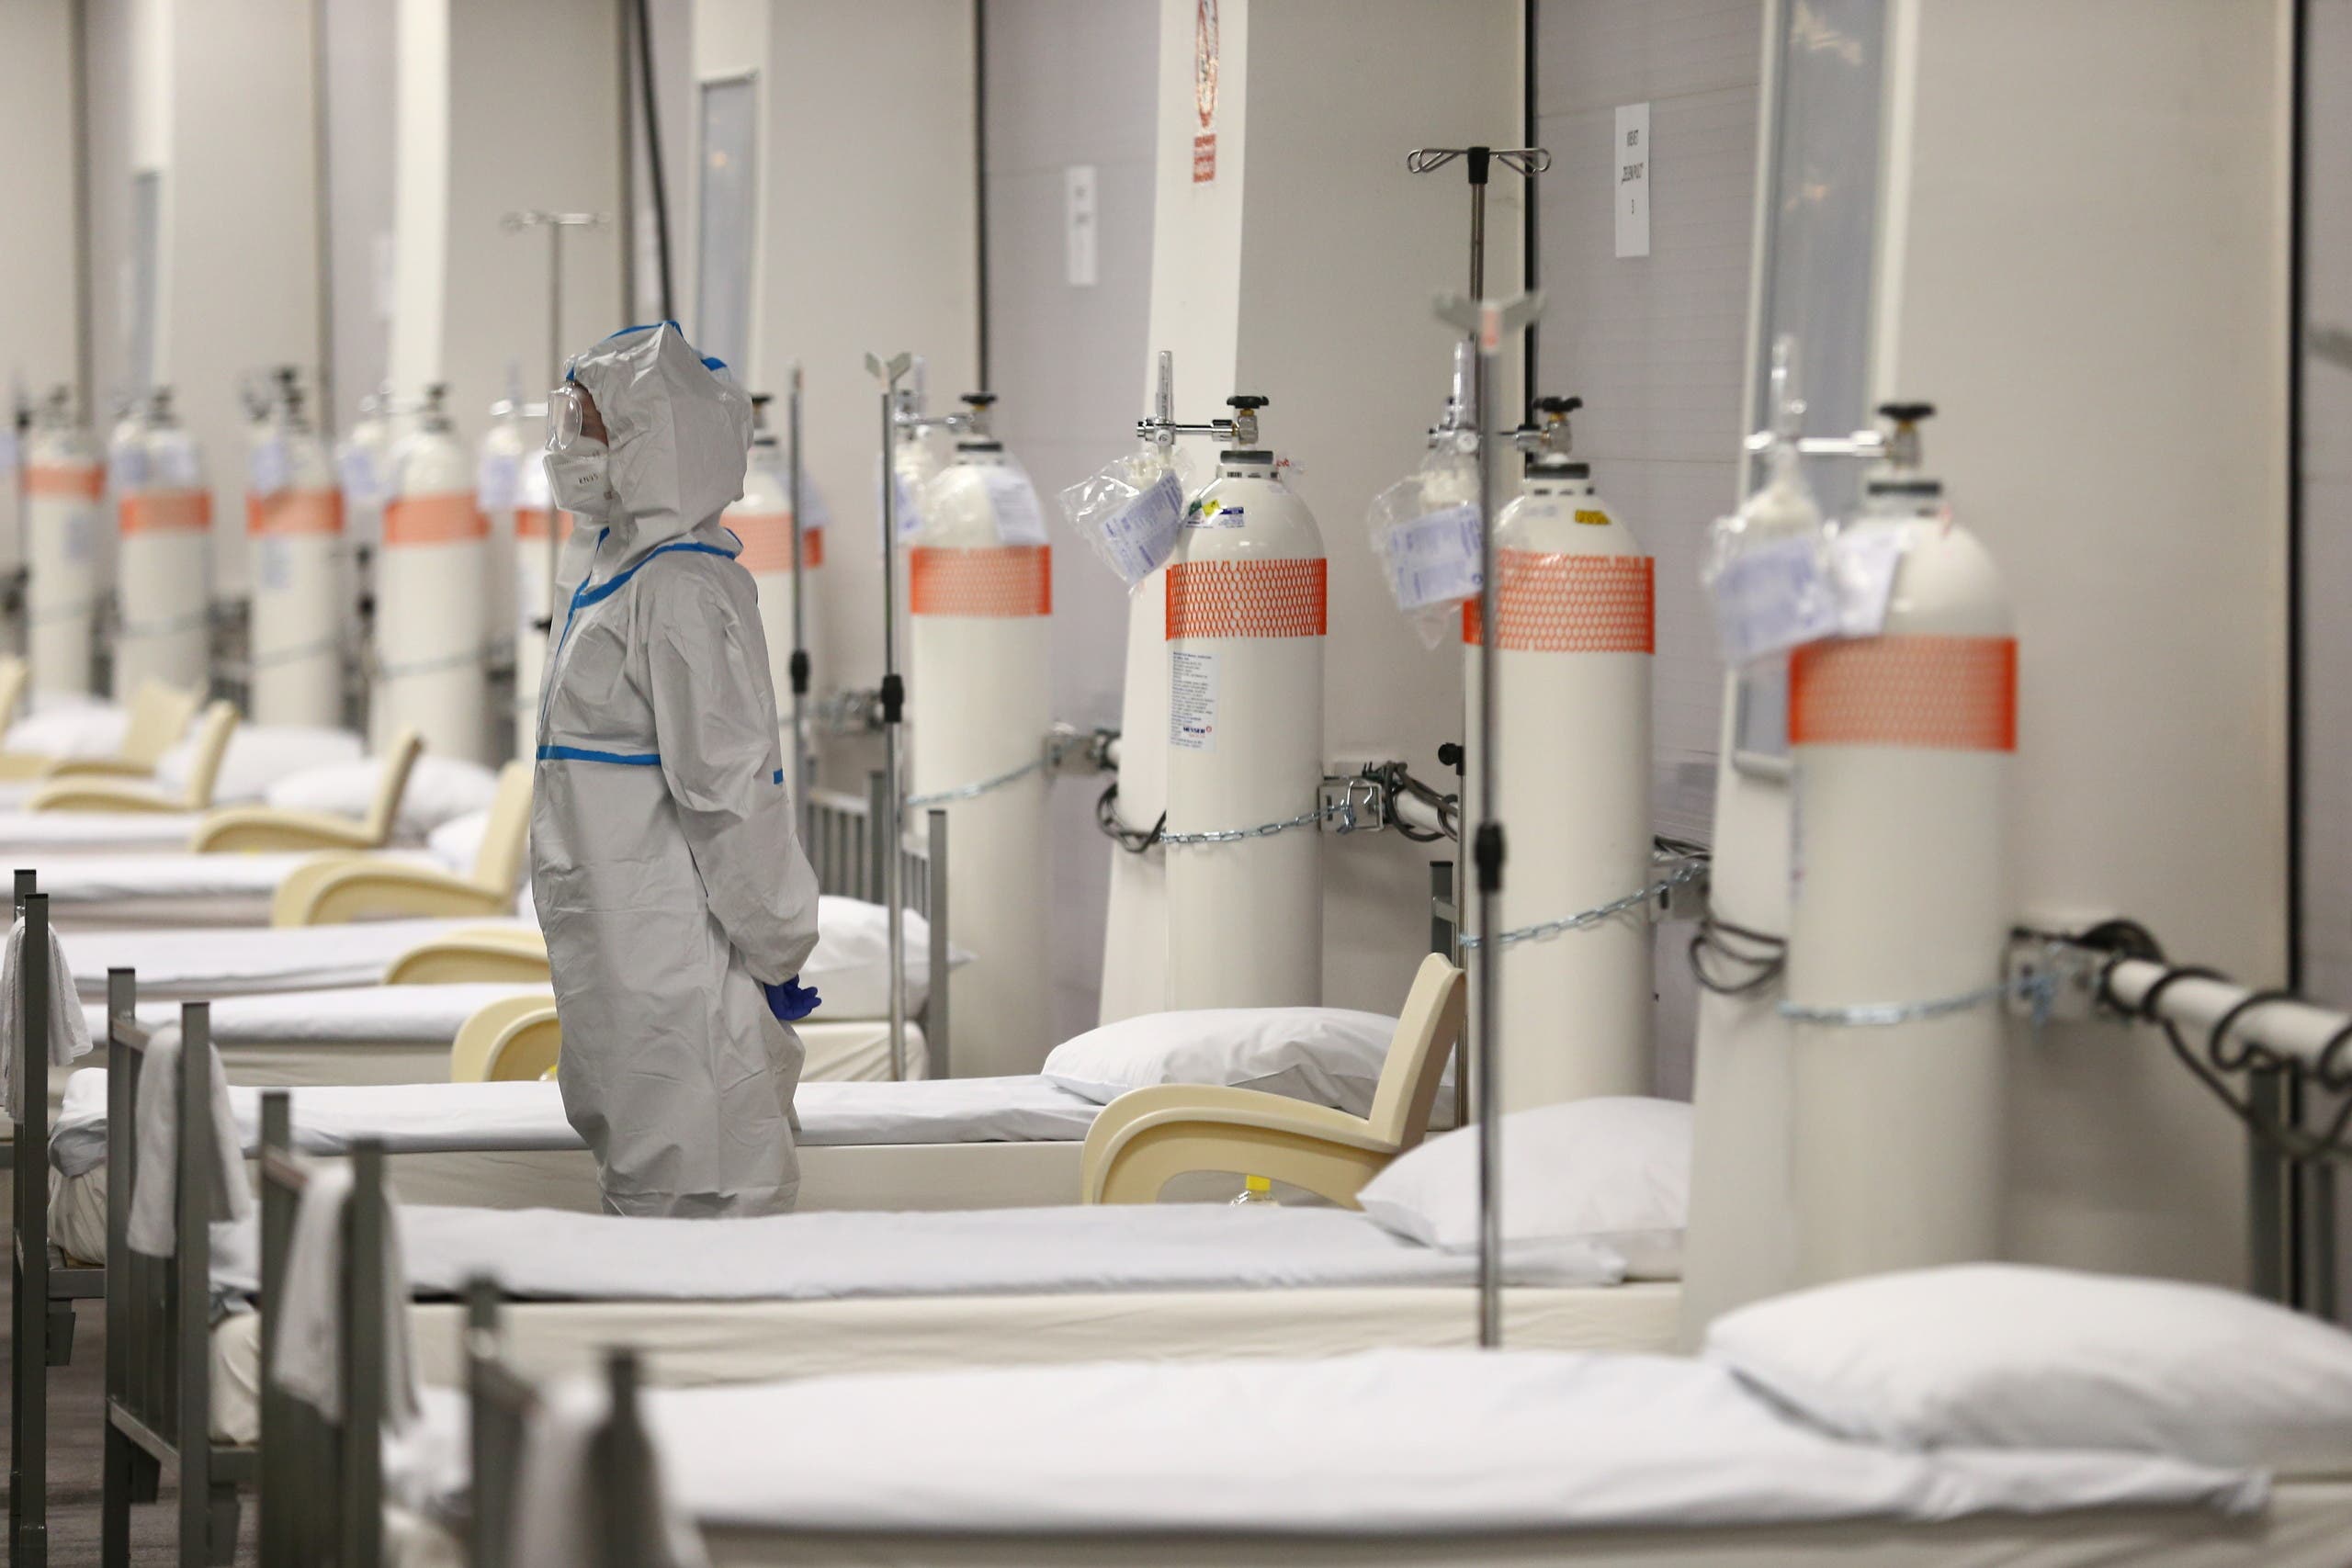 مستشفى ميداني تم إنشاؤه في ملعب في كرواتيا لاستقبال المصابين بكورونا